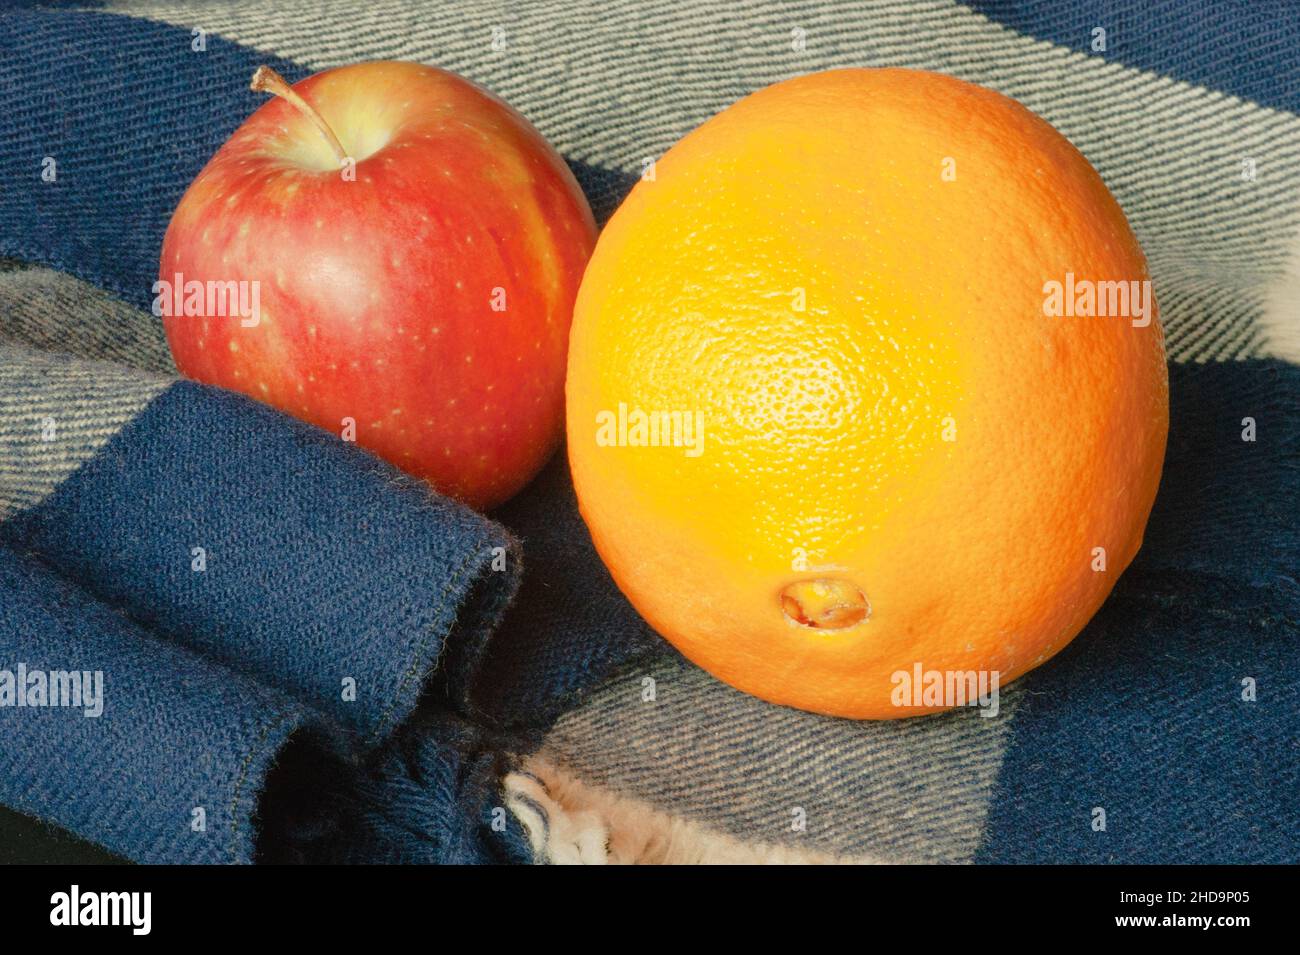 Fruit d'hiver, orange et pomme, sur un foulard en laine bleue et blanche.Le gros plan montre la texture, le contraste et une qualité fraîche dans les aliments prêts-à-manger. Banque D'Images